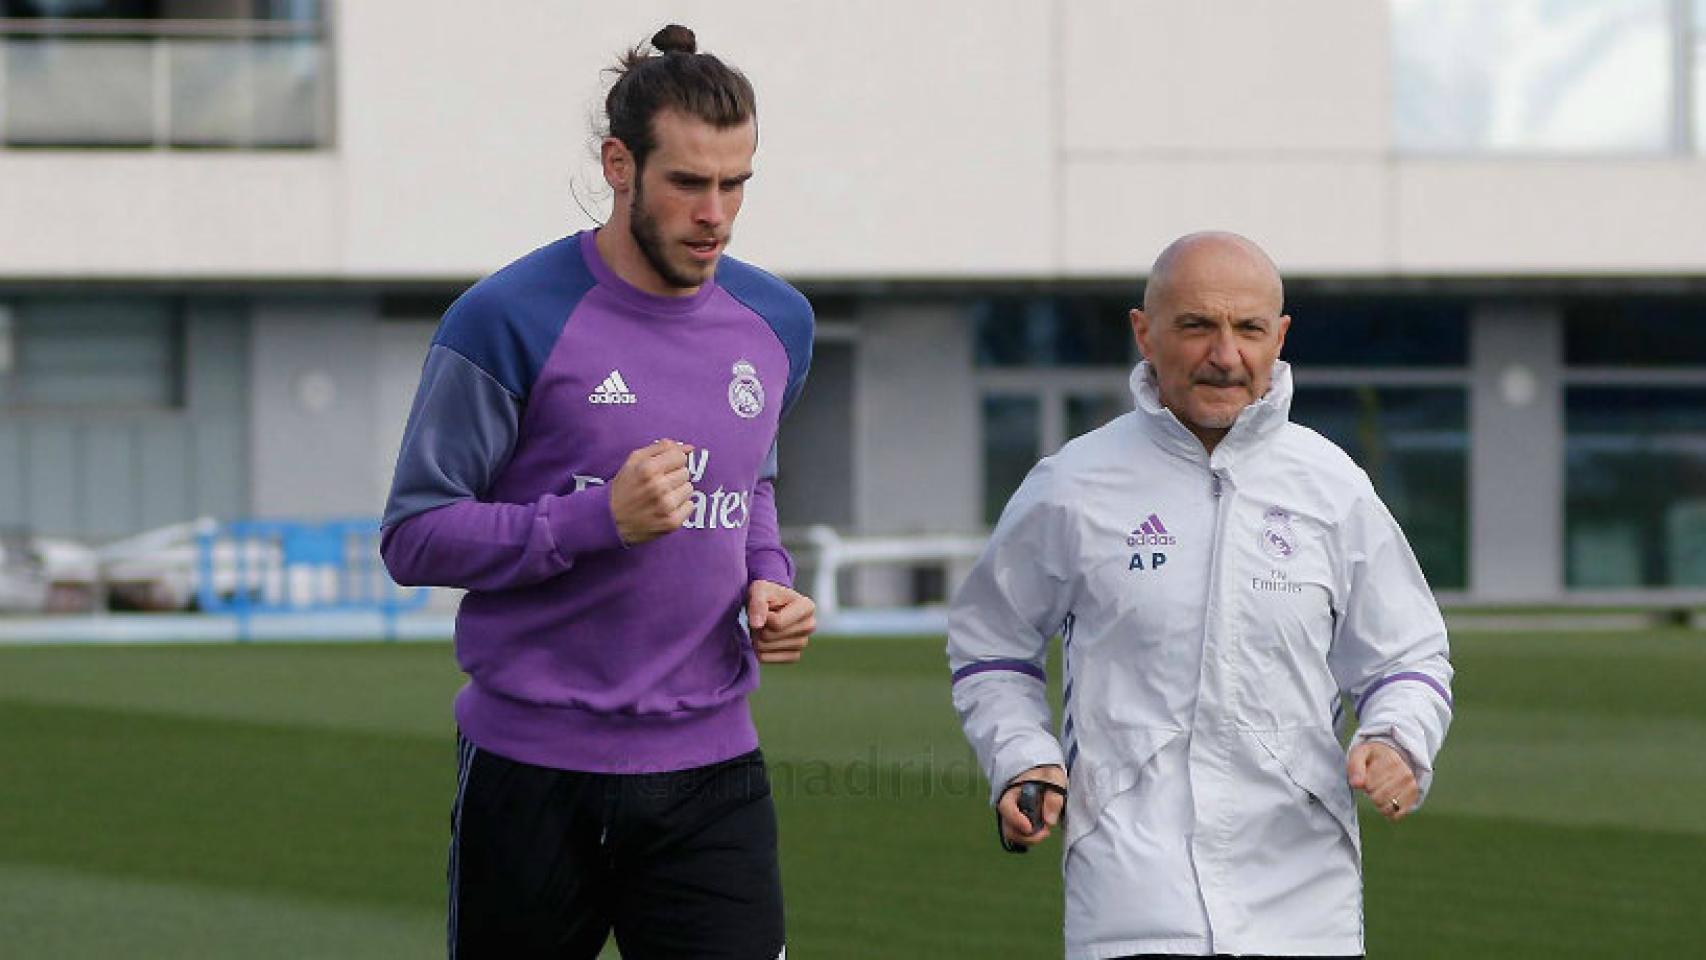 Bale hace carrera continua sobre el césped